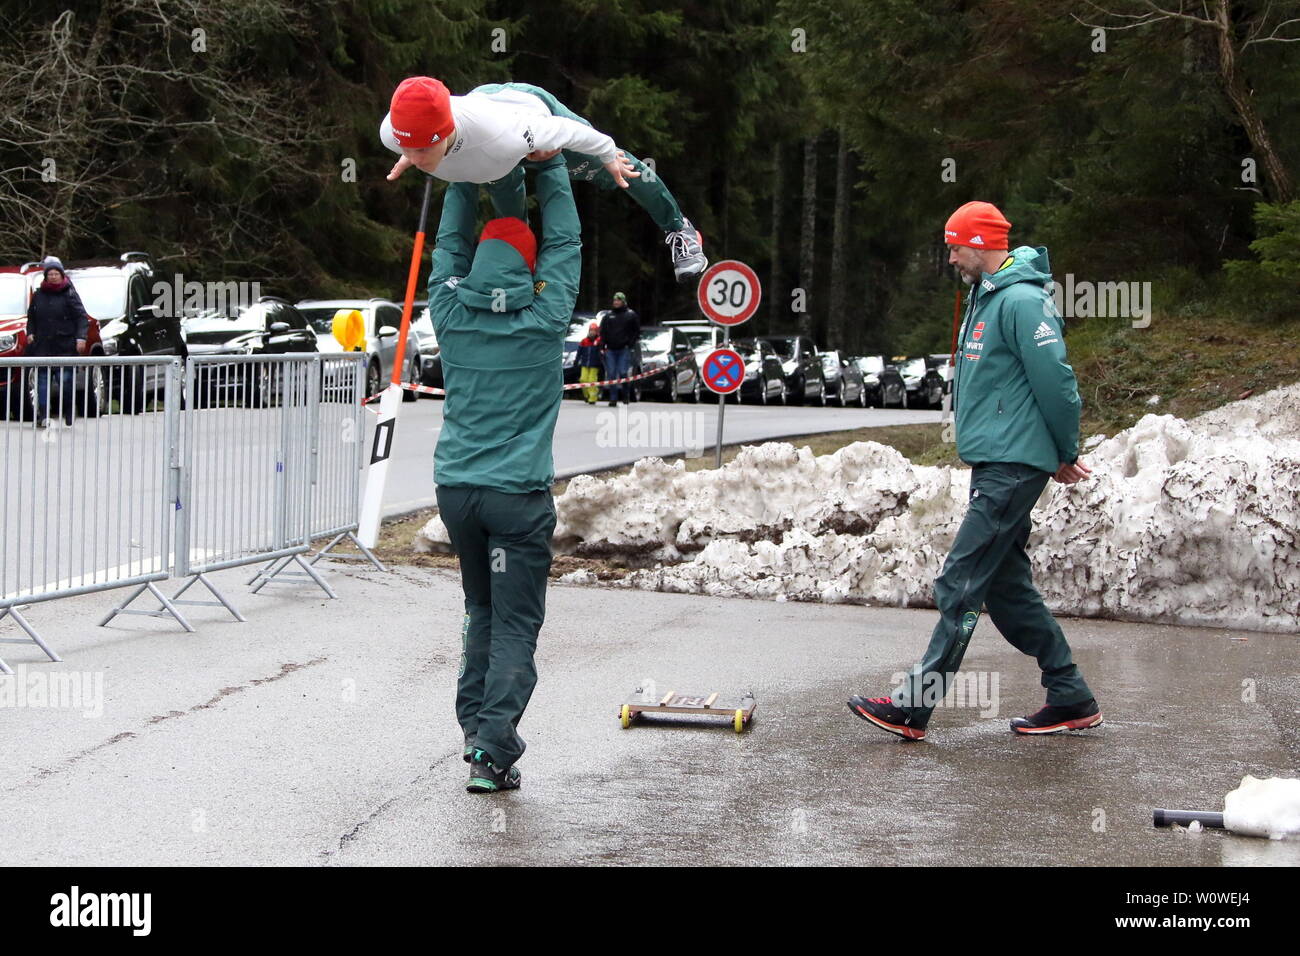 Sprung-Imitationsübung eines Athleten vor dem Weltcup Nordische Kombination Schwarzwaldpokal 2019 Stock Photo